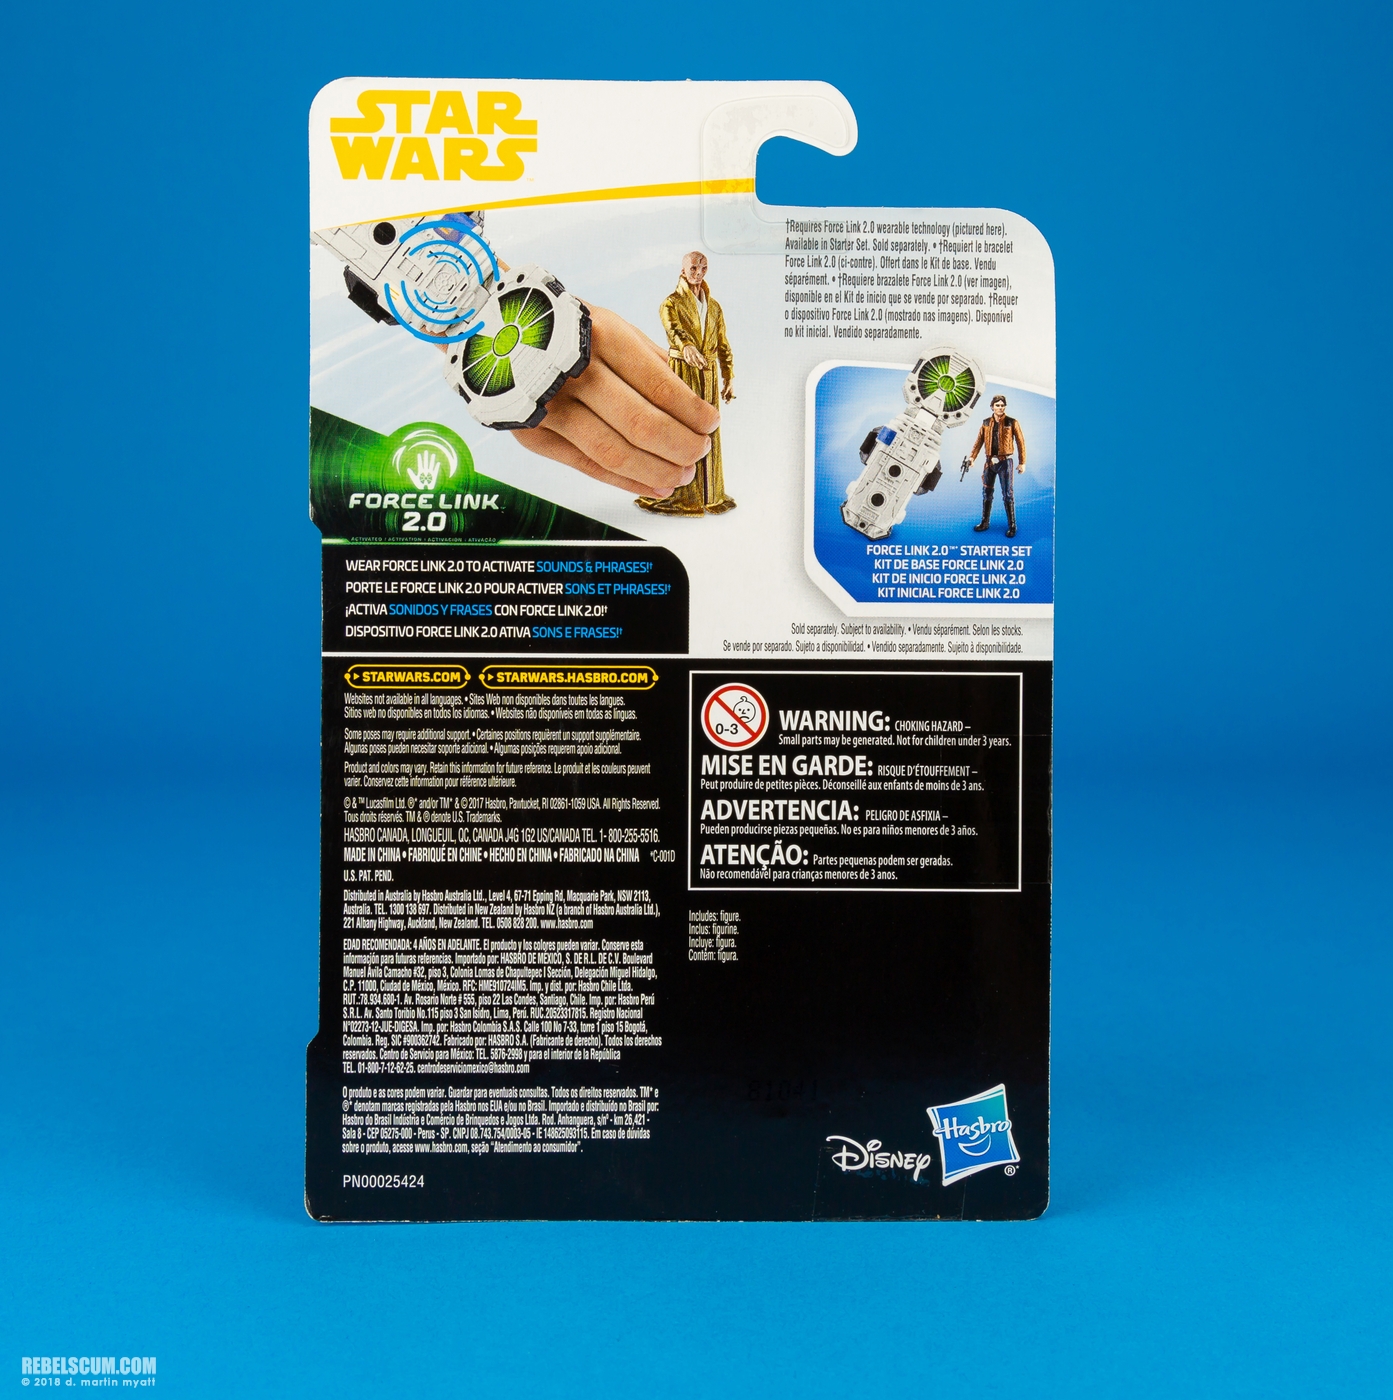 Supreme-Leader-Snoke-Star-Wars-Universe-Force-Link-009.jpg